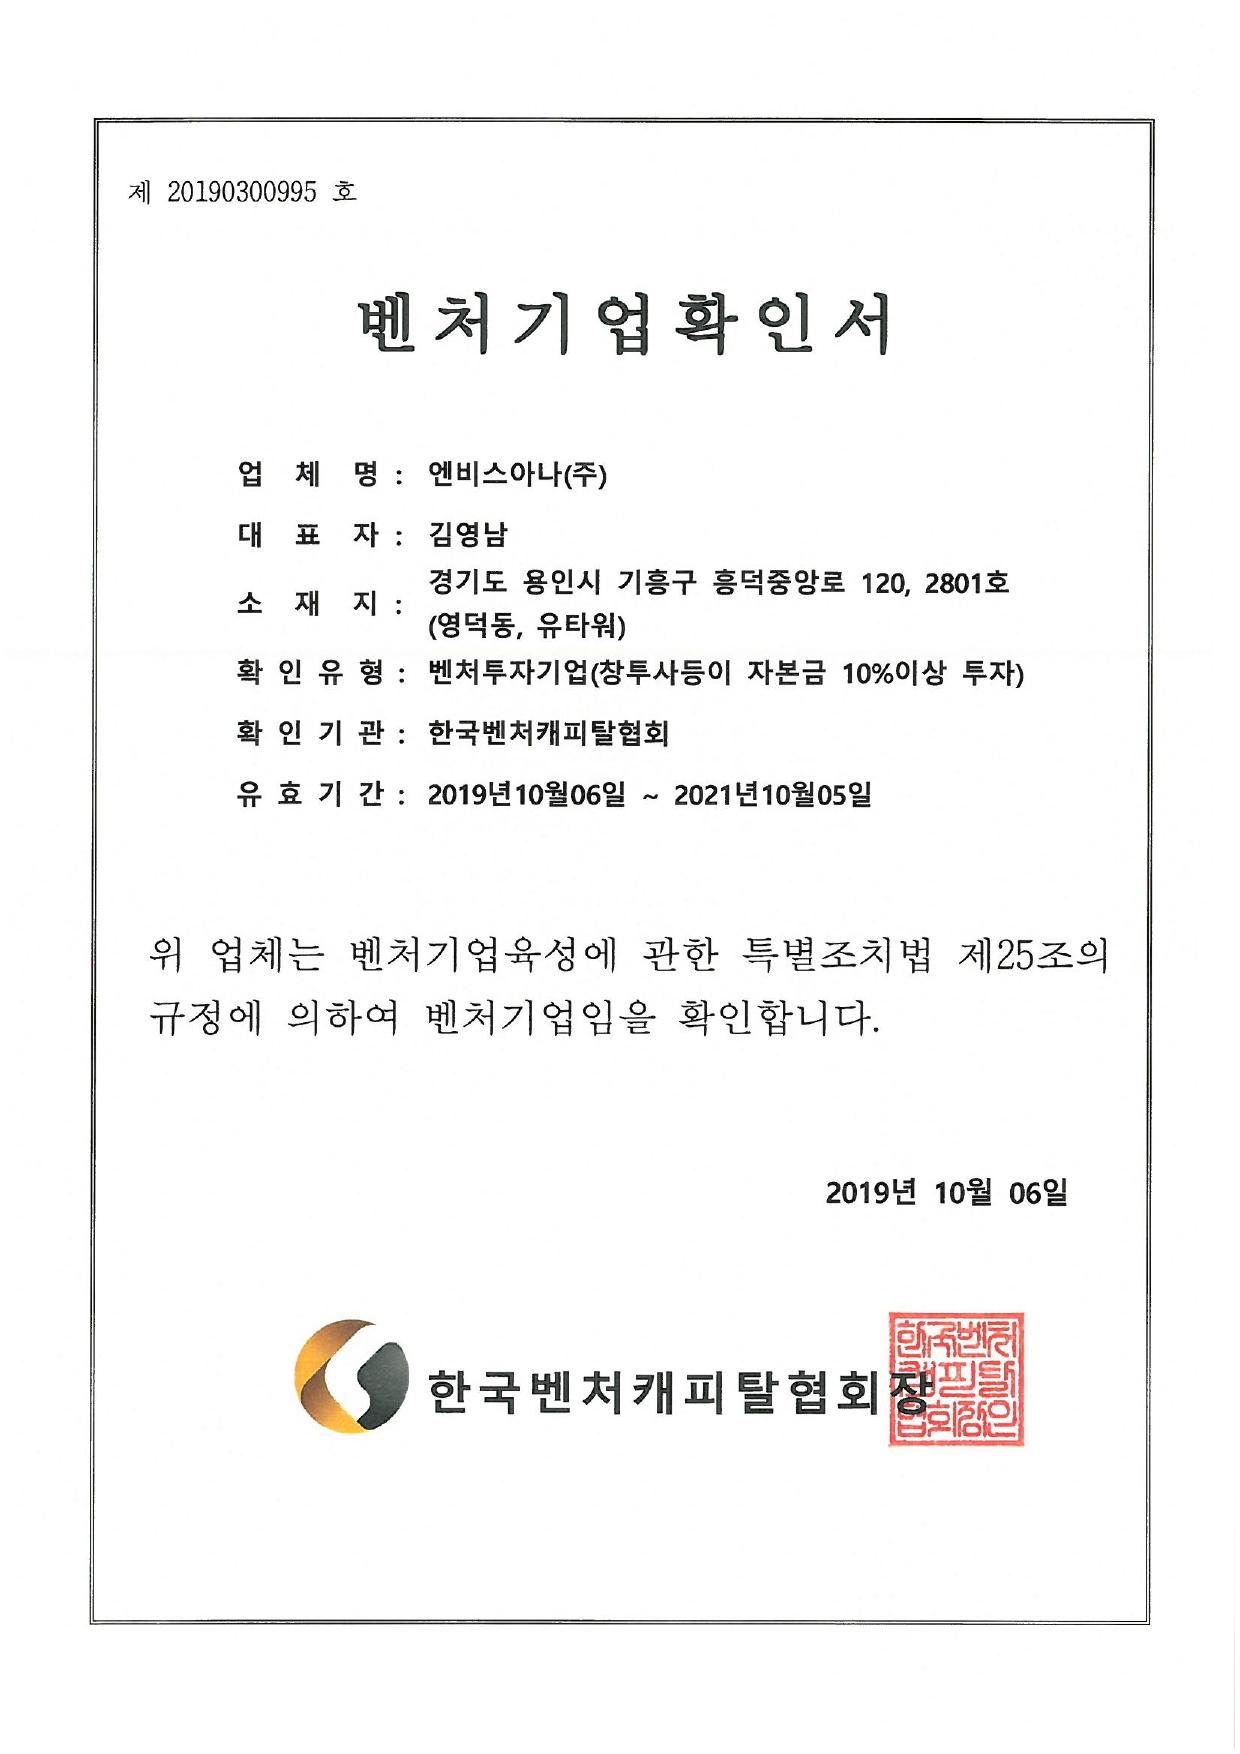 벤처기업확인서_엔비스아나(주)_2019.10 ~ 2021.10_page-0001.jpg